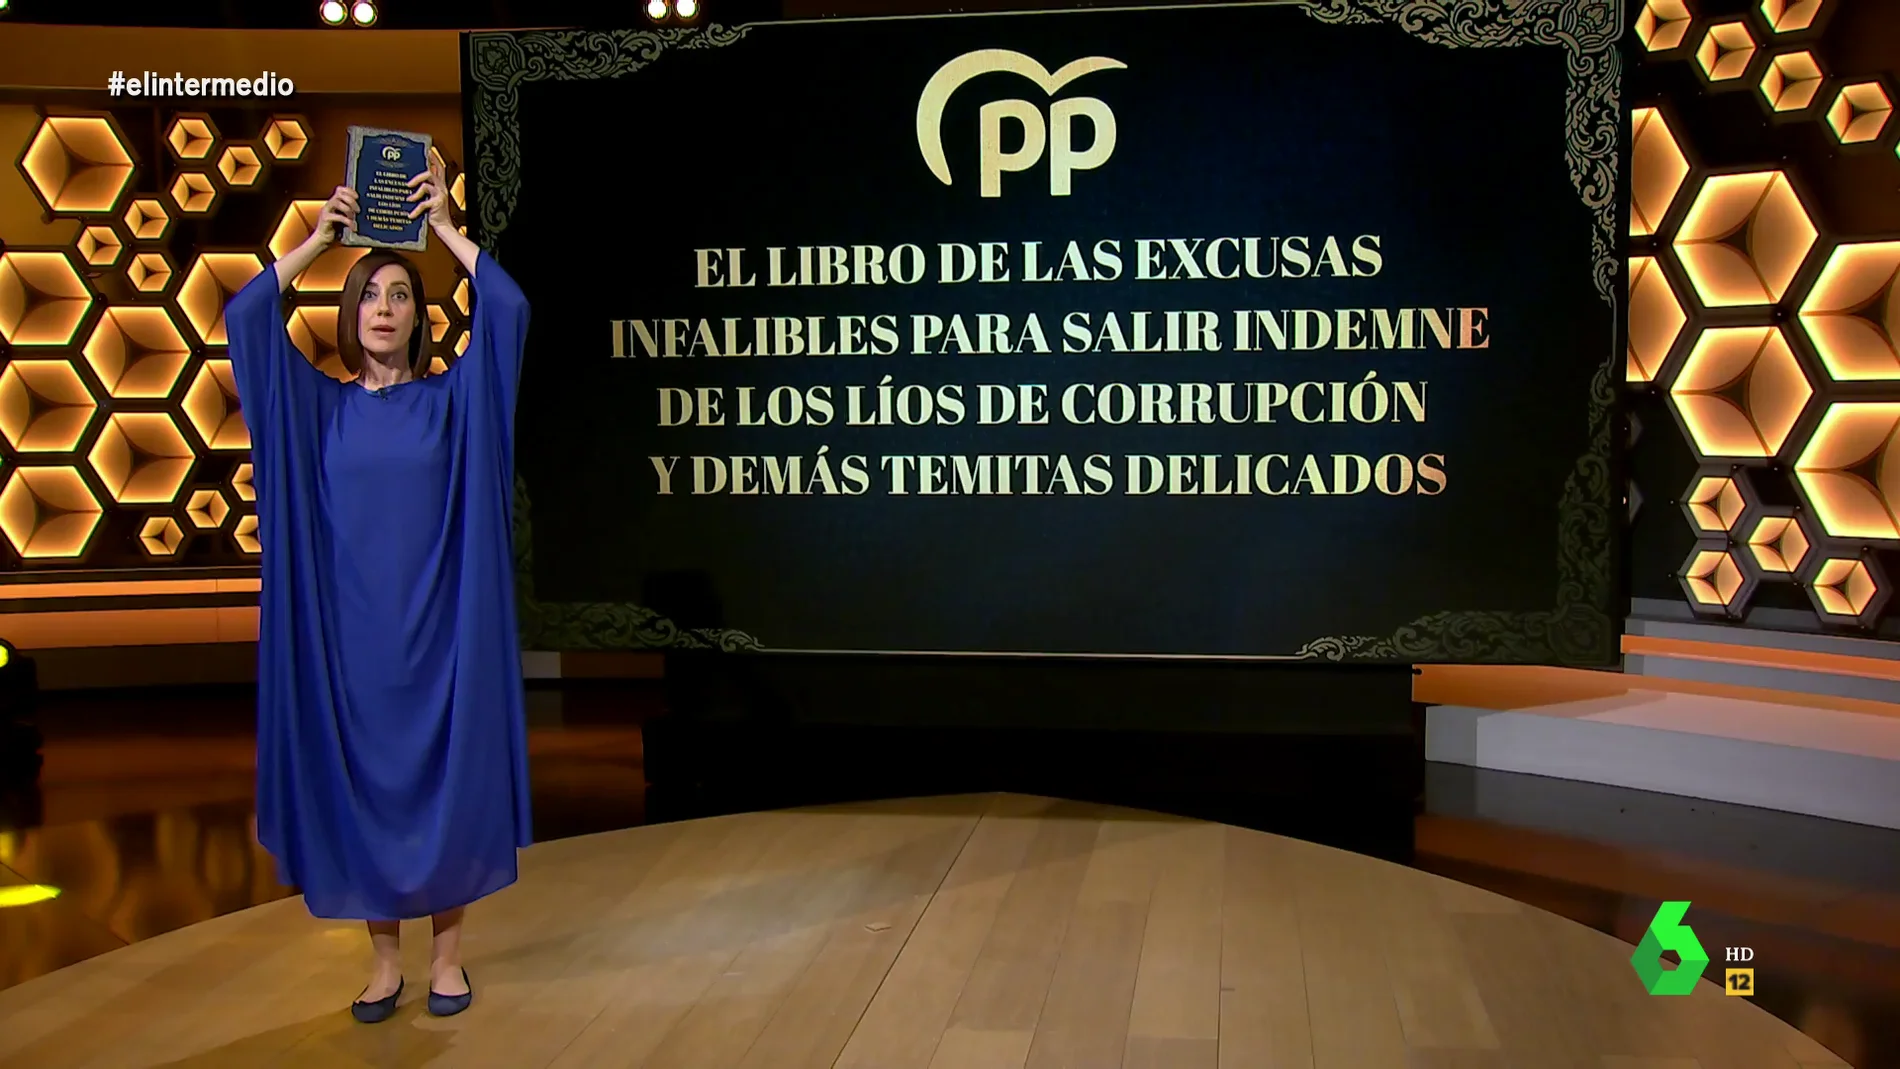 Cristina Gallego descubre la 'biblia' de las excusas del PP que usaron Trillo o Rajoy y a la que ahora recurre Martínez-Almeida